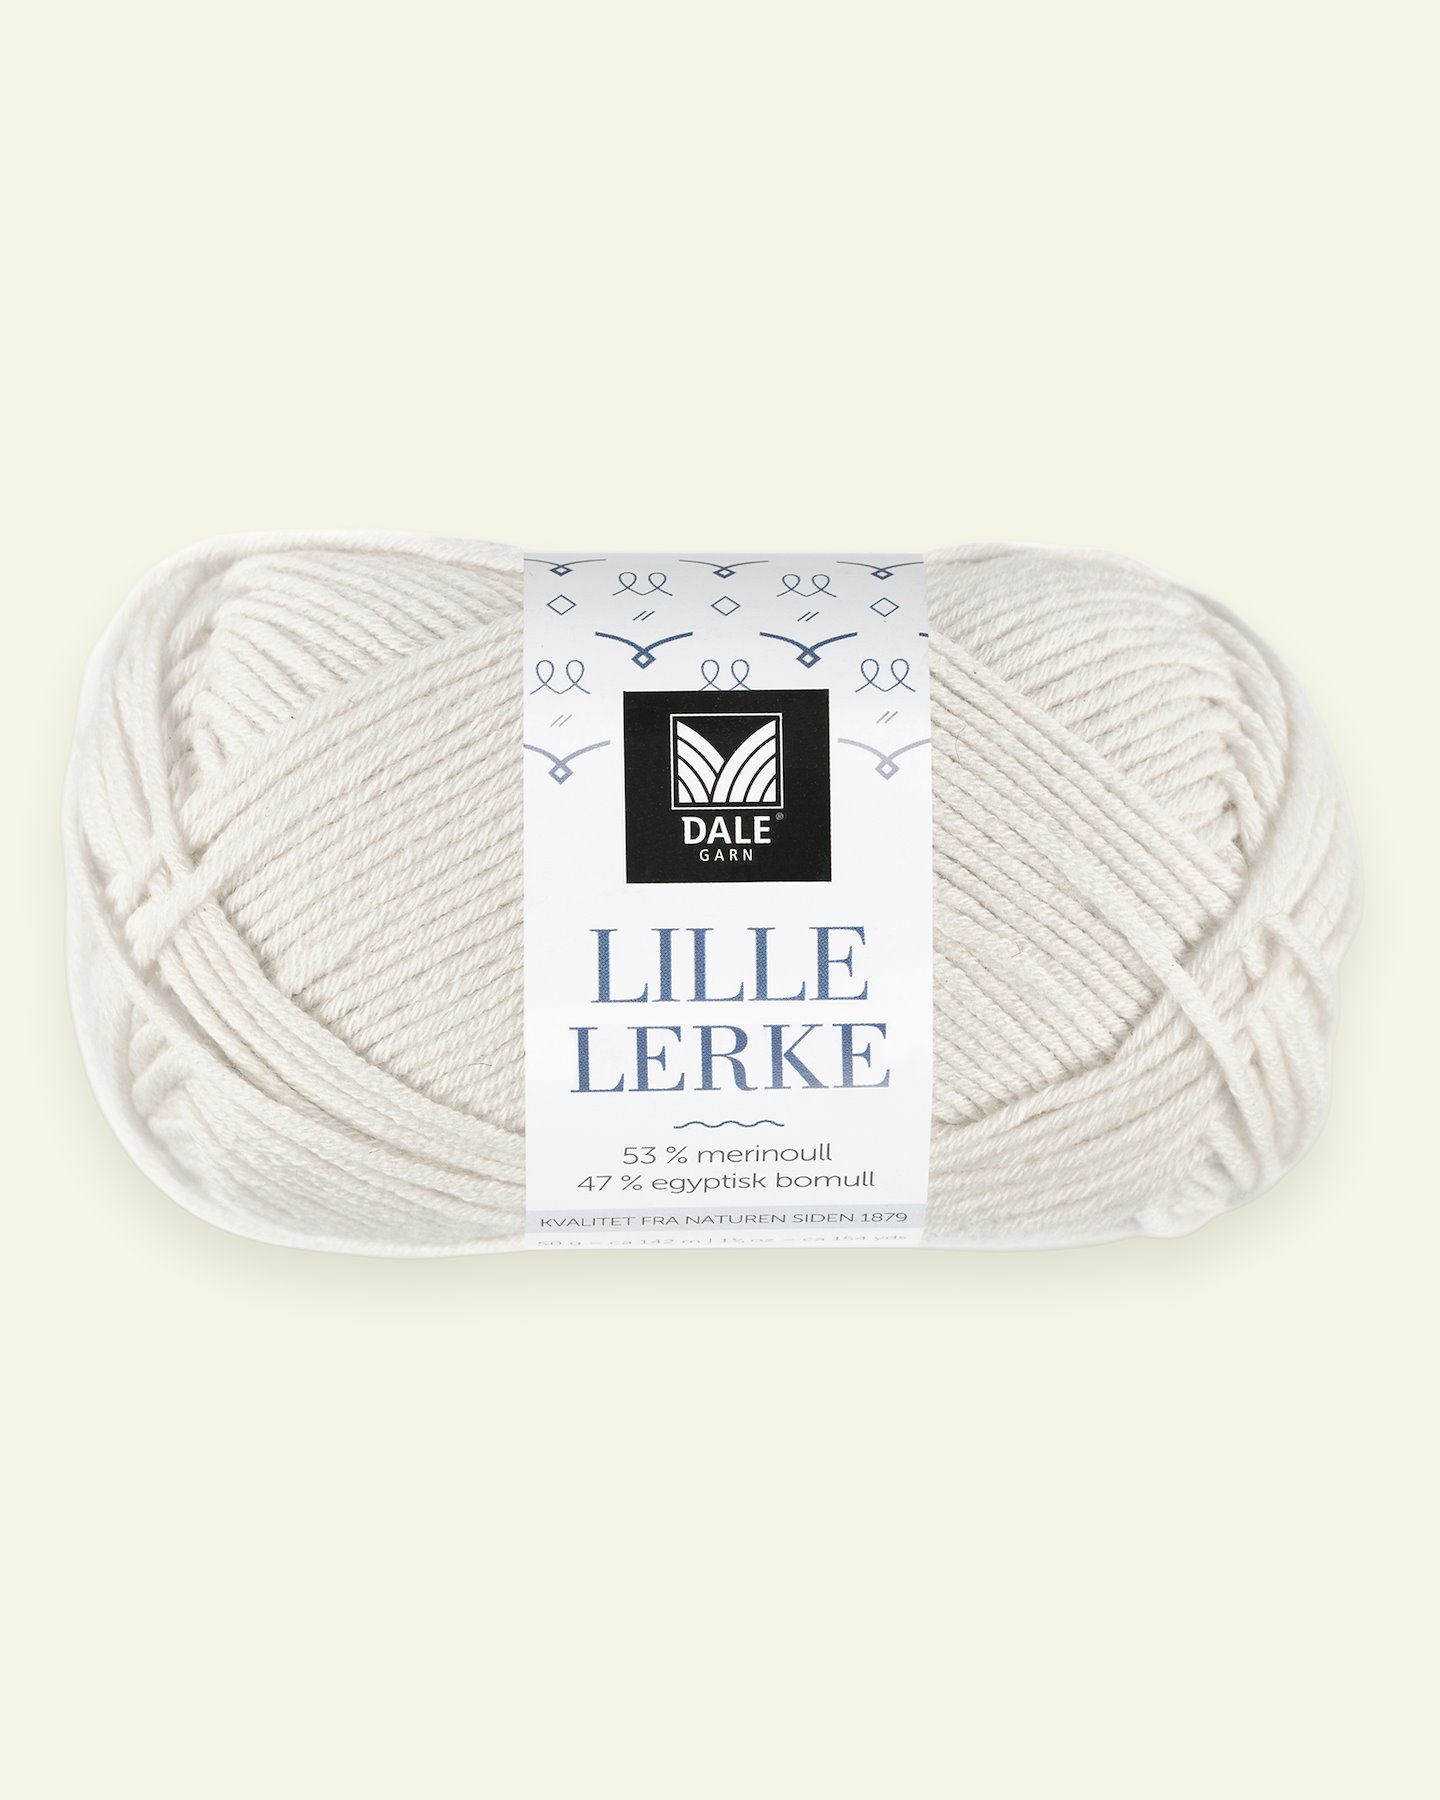 Dale Garn, merino/bomuldsgarn "Lille Lerke", kit (8166) 90000432_pack